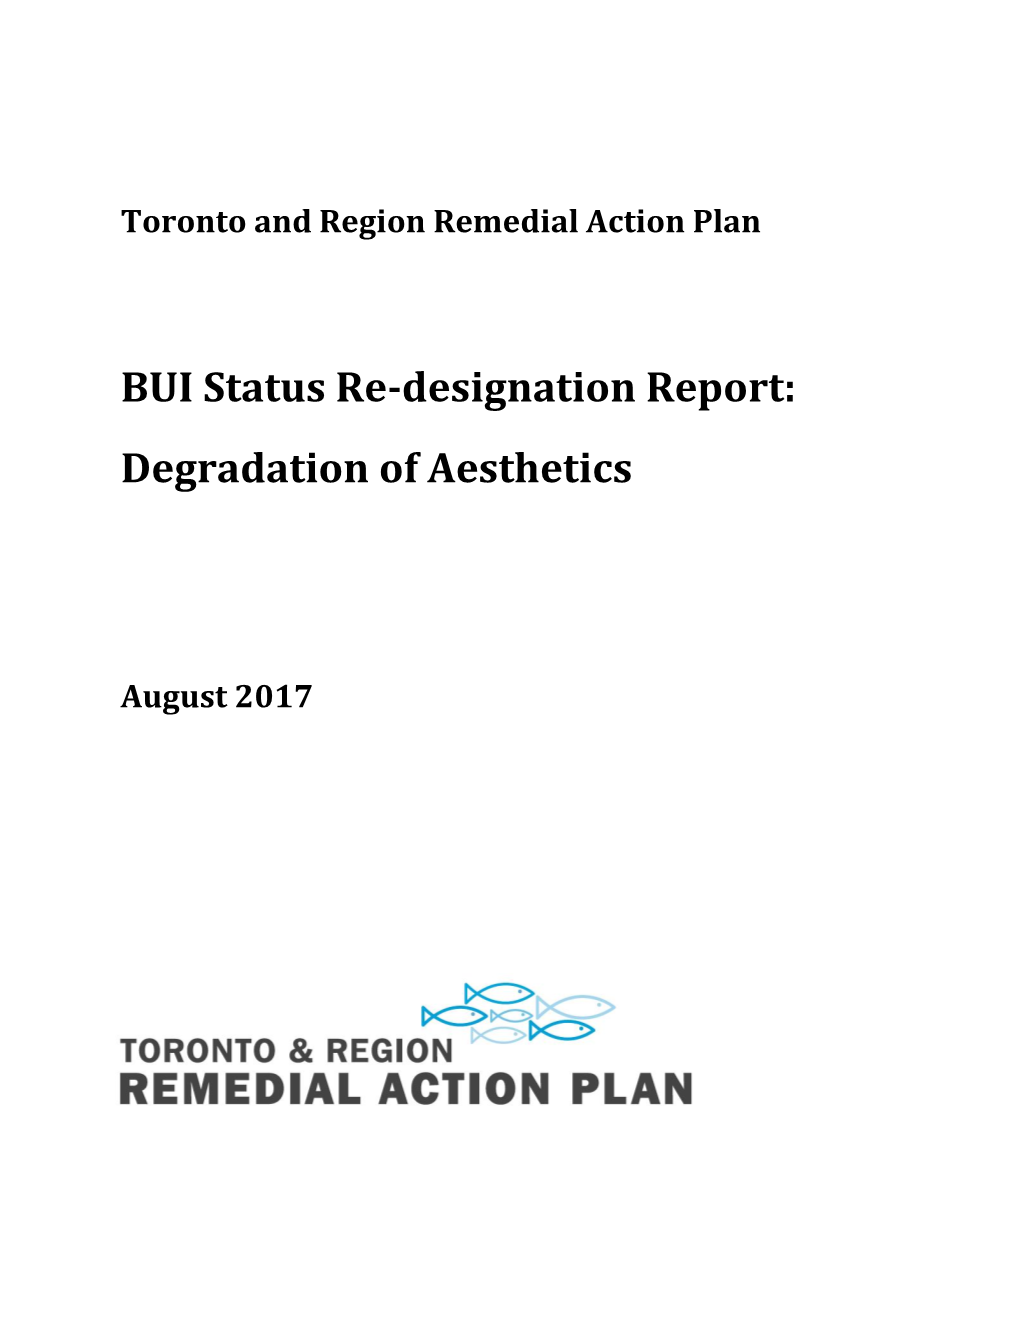 BUI Status Re-Designation Report: Degradation of Aesthetics